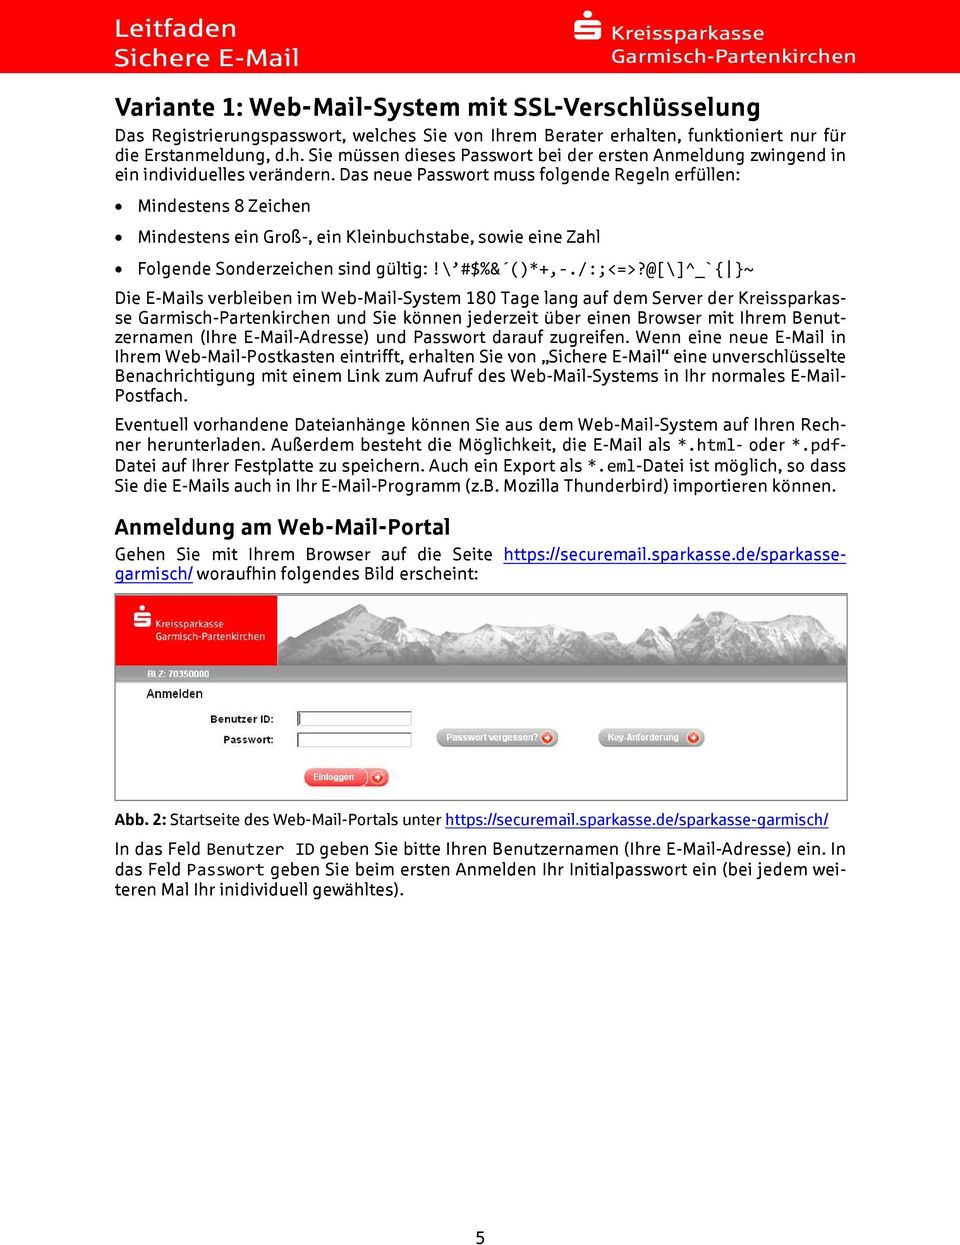 @[\]^_`{ }~ Die E-Mails verbleiben im Web-Mail-System 180 Tage lang auf dem Server der Kreissparkasse Garmisch-Partenkirchen und Sie können jederzeit über einen Browser mit Ihrem Benutzernamen (Ihre